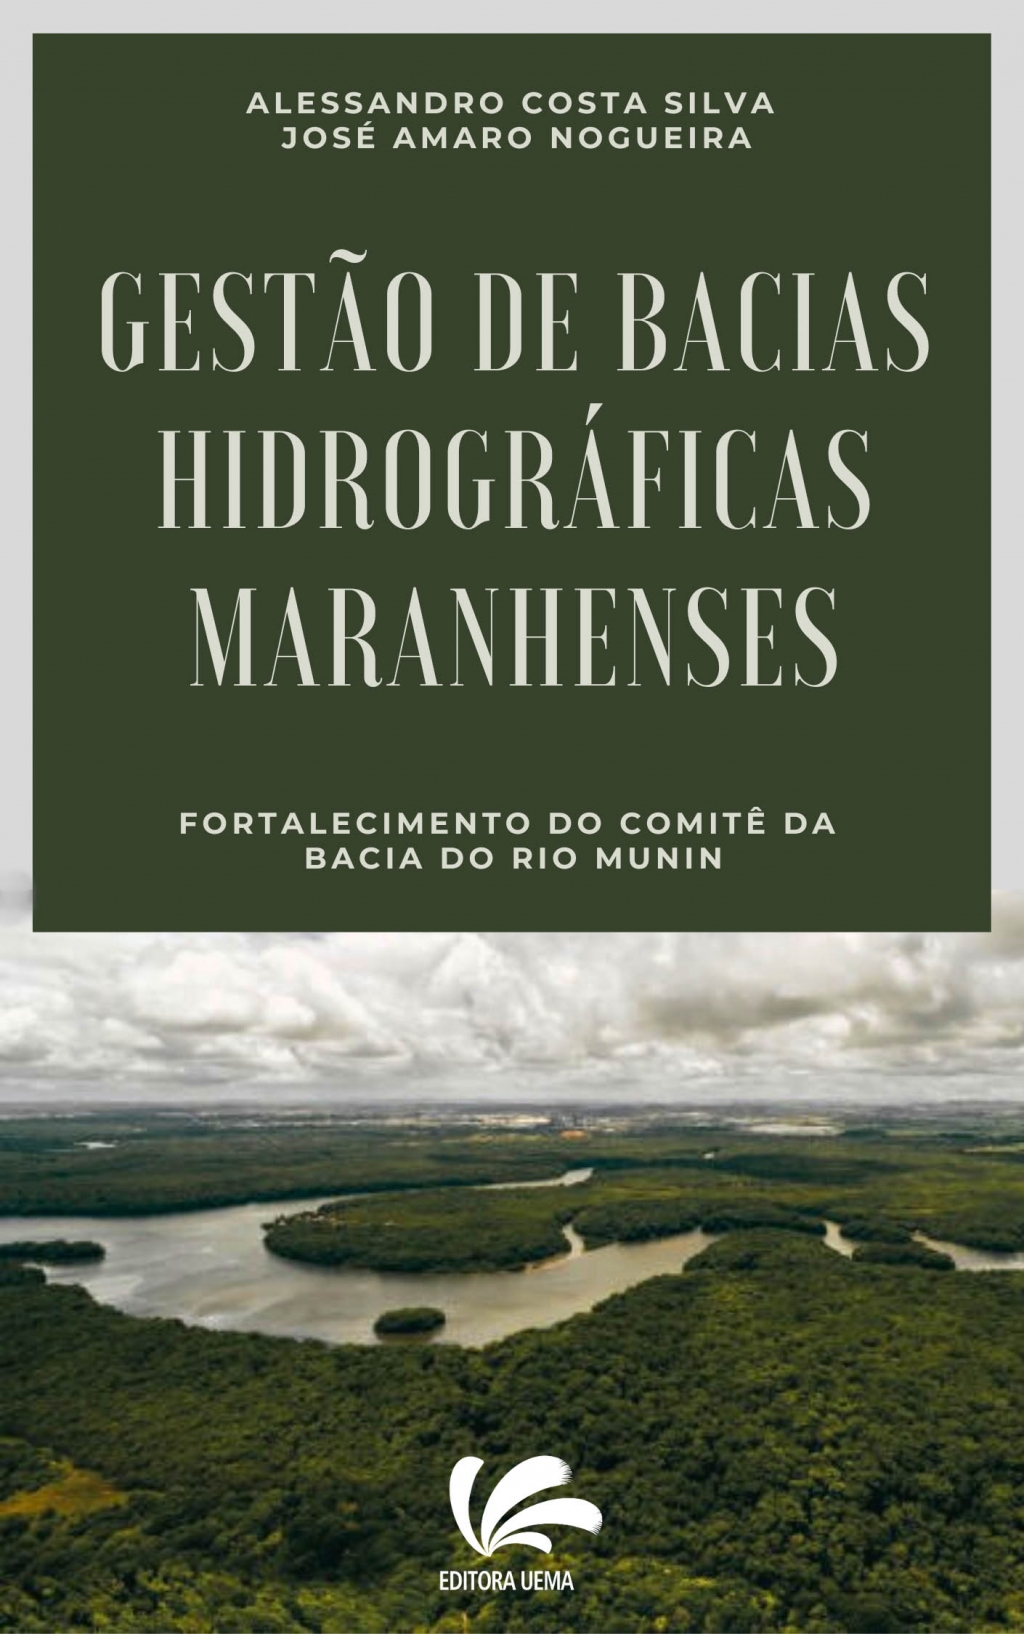 Gestão de Bacias Hidrográficas Maranhenses: fortalecimento da bacia do Rio Munin (DISPONÍVEL PARA DOWNLOAD)